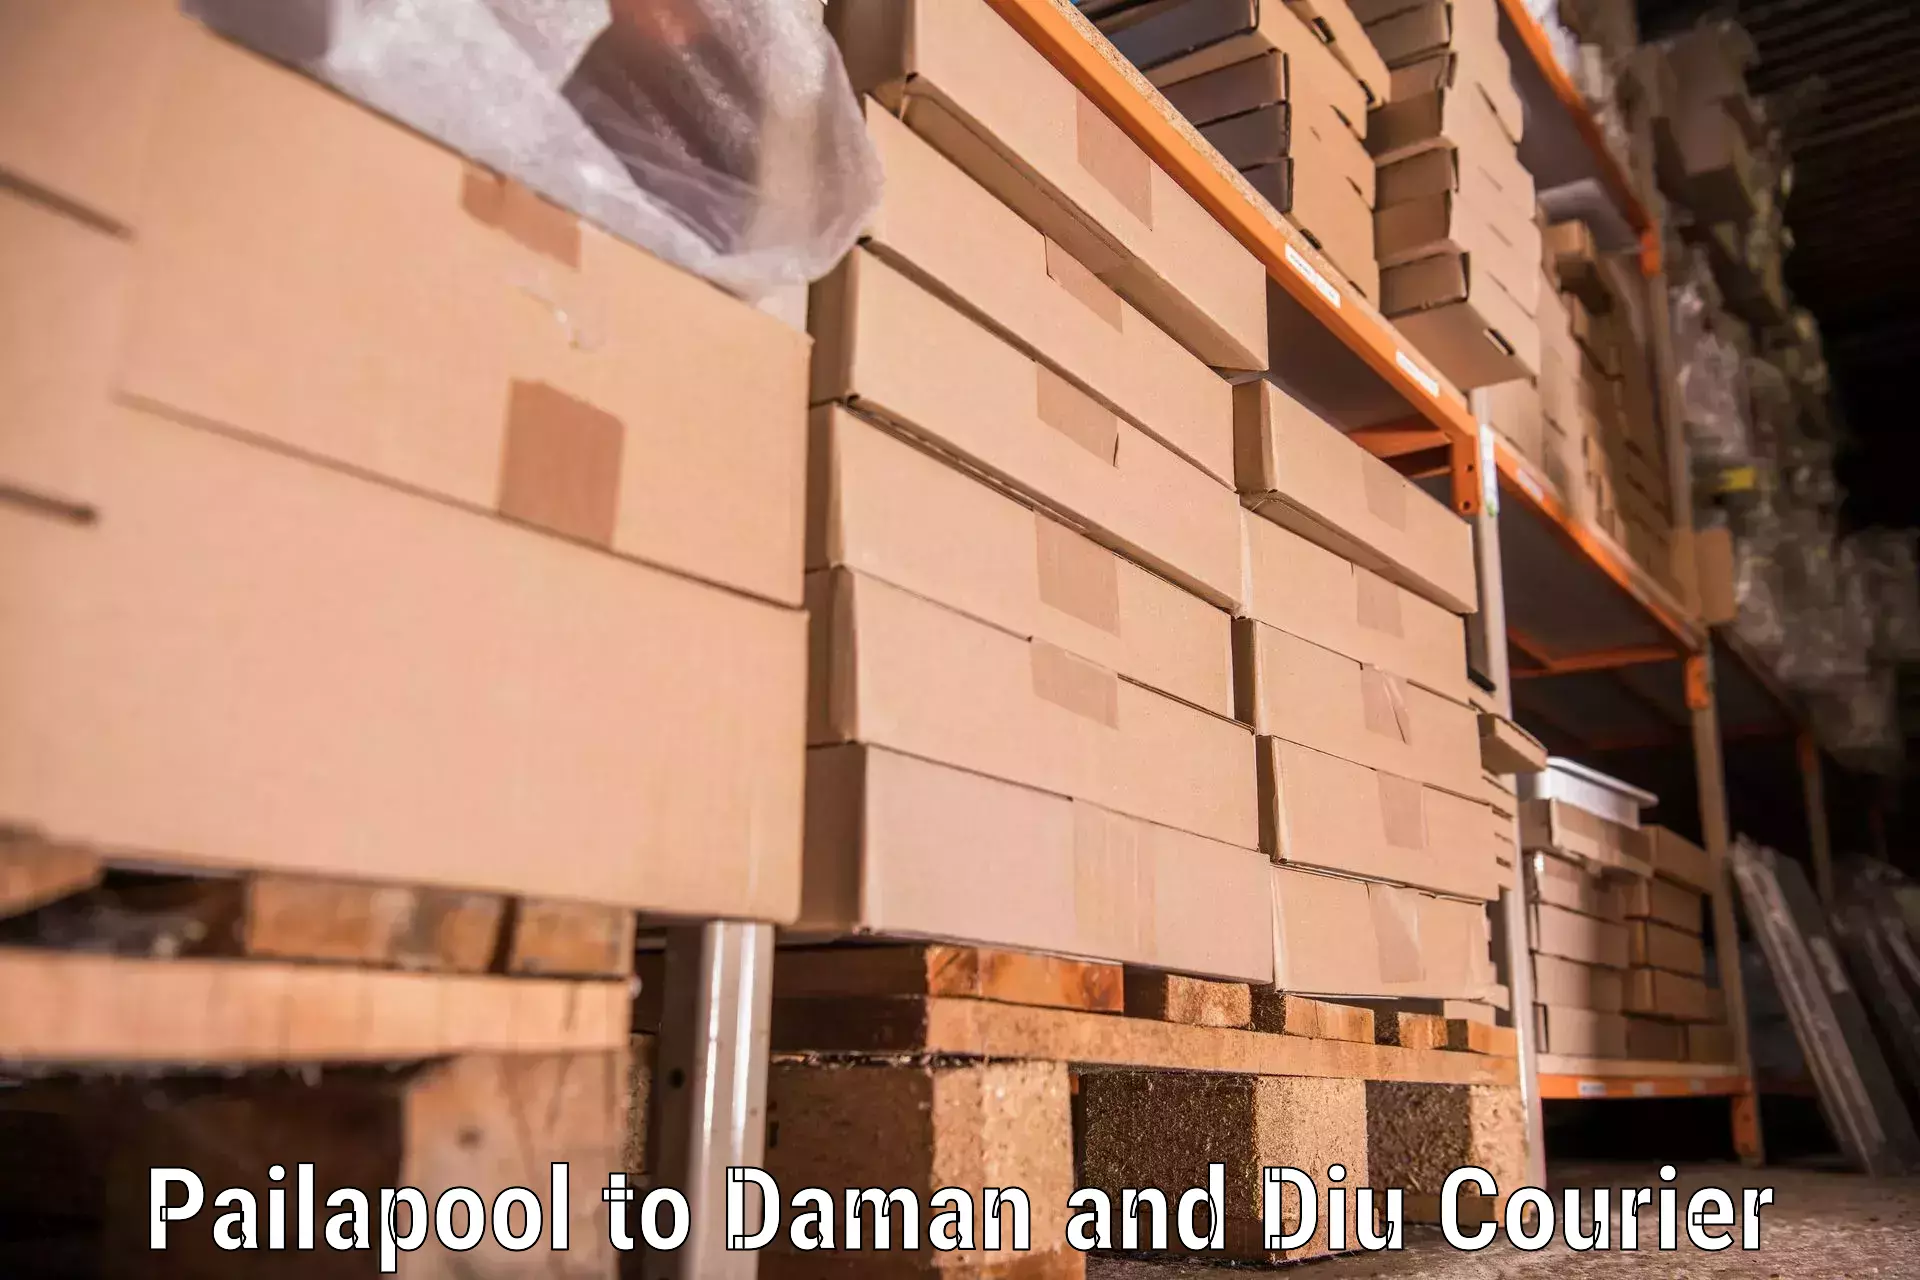 Furniture transport service Pailapool to Daman and Diu